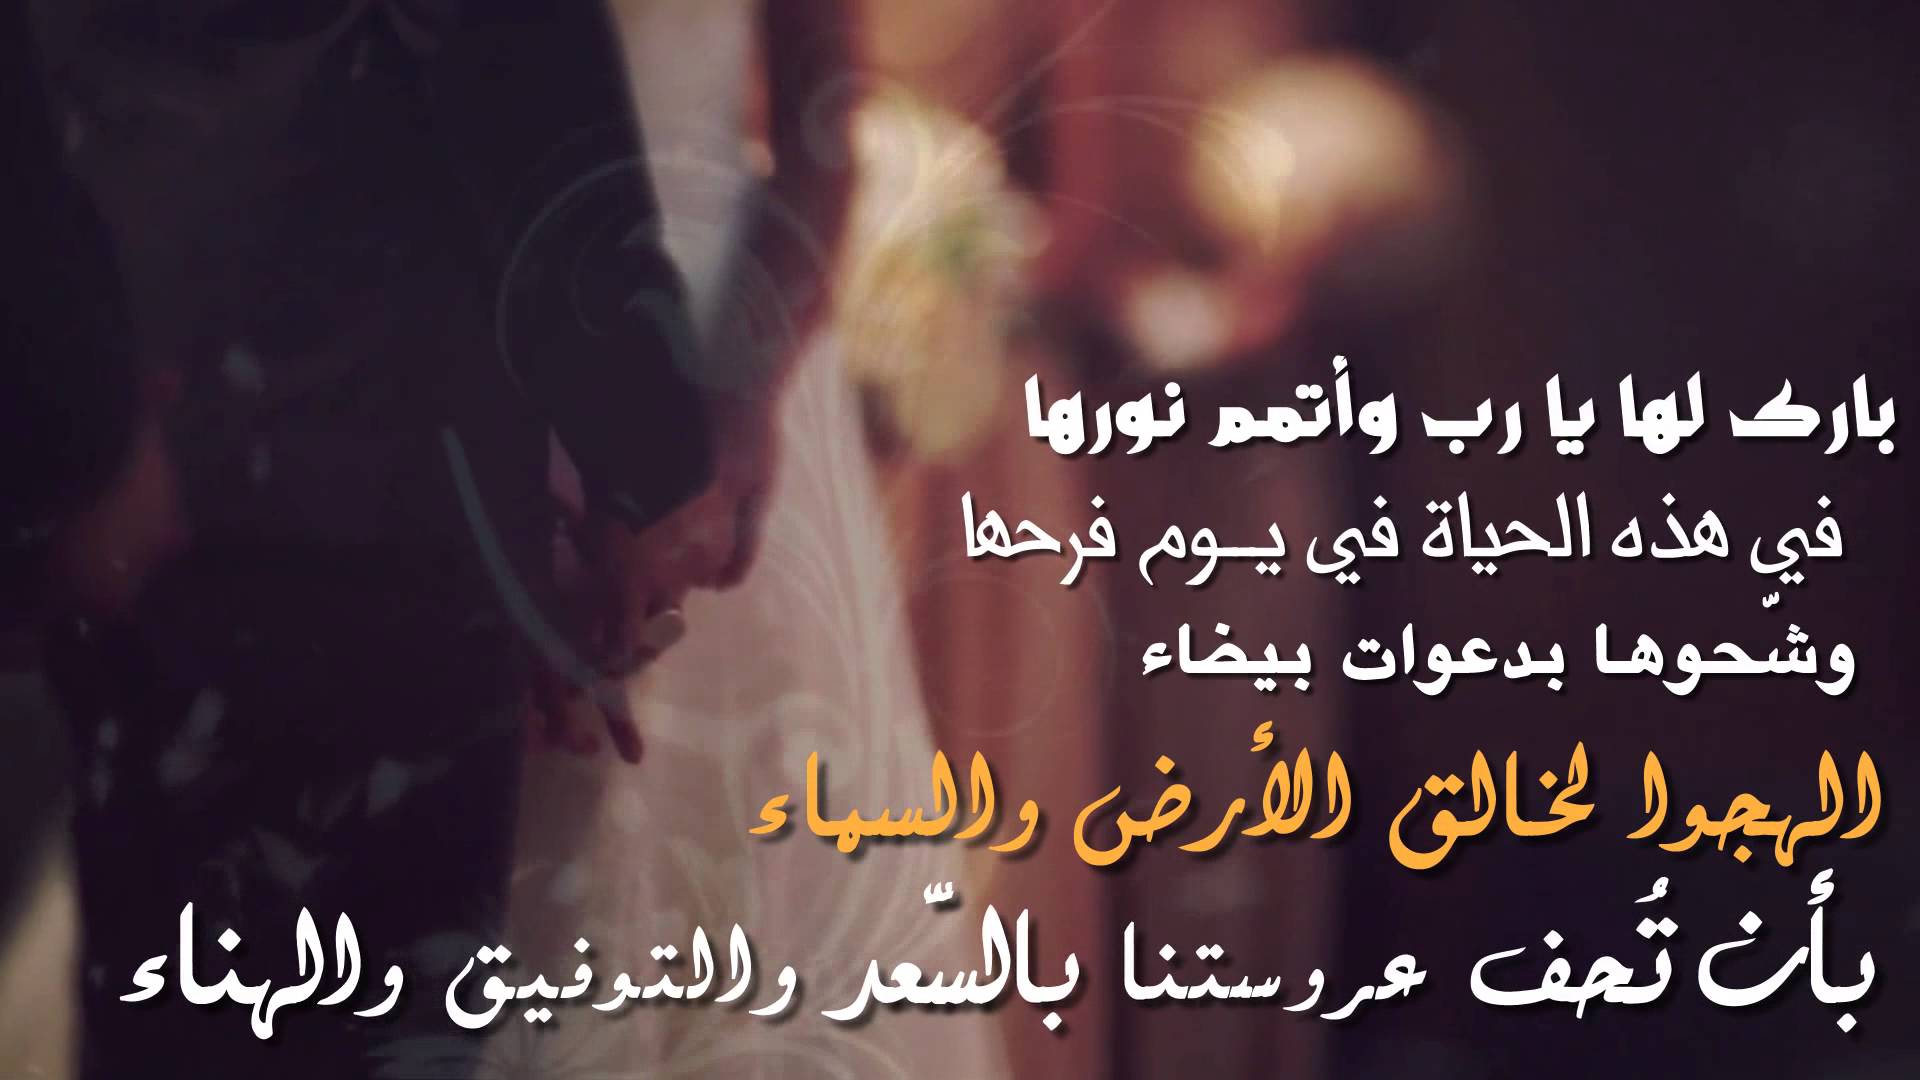 5977 1 كلمات للعروس من صديقتها - الصداقه والفرح بصديقتى العروسه جولى سحيمان